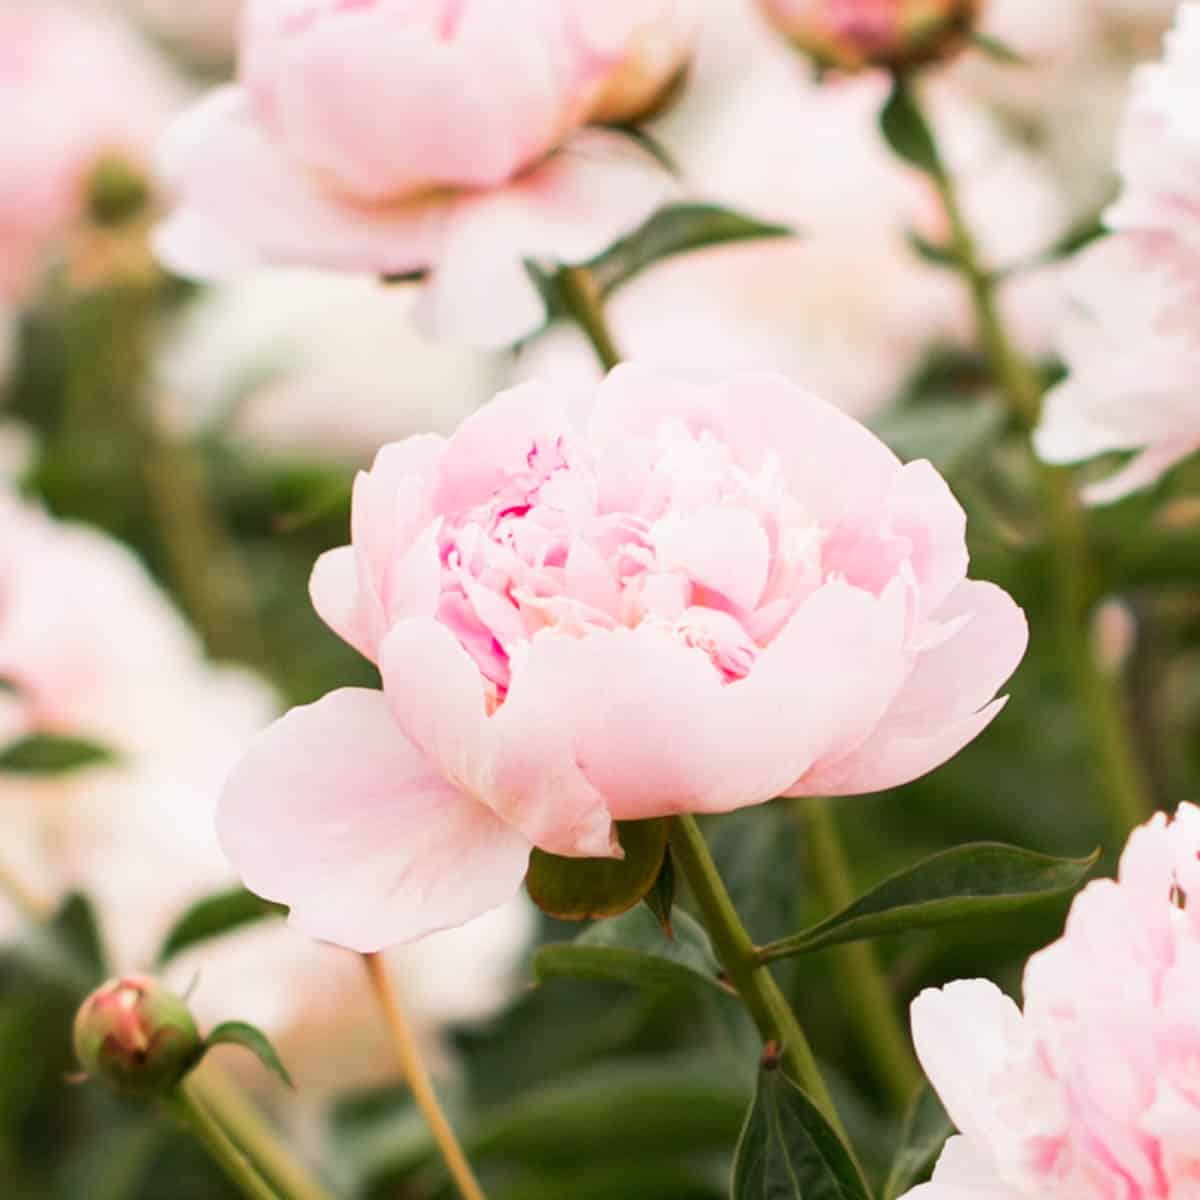 The Best Beginner’s Guide To Flower Gardening